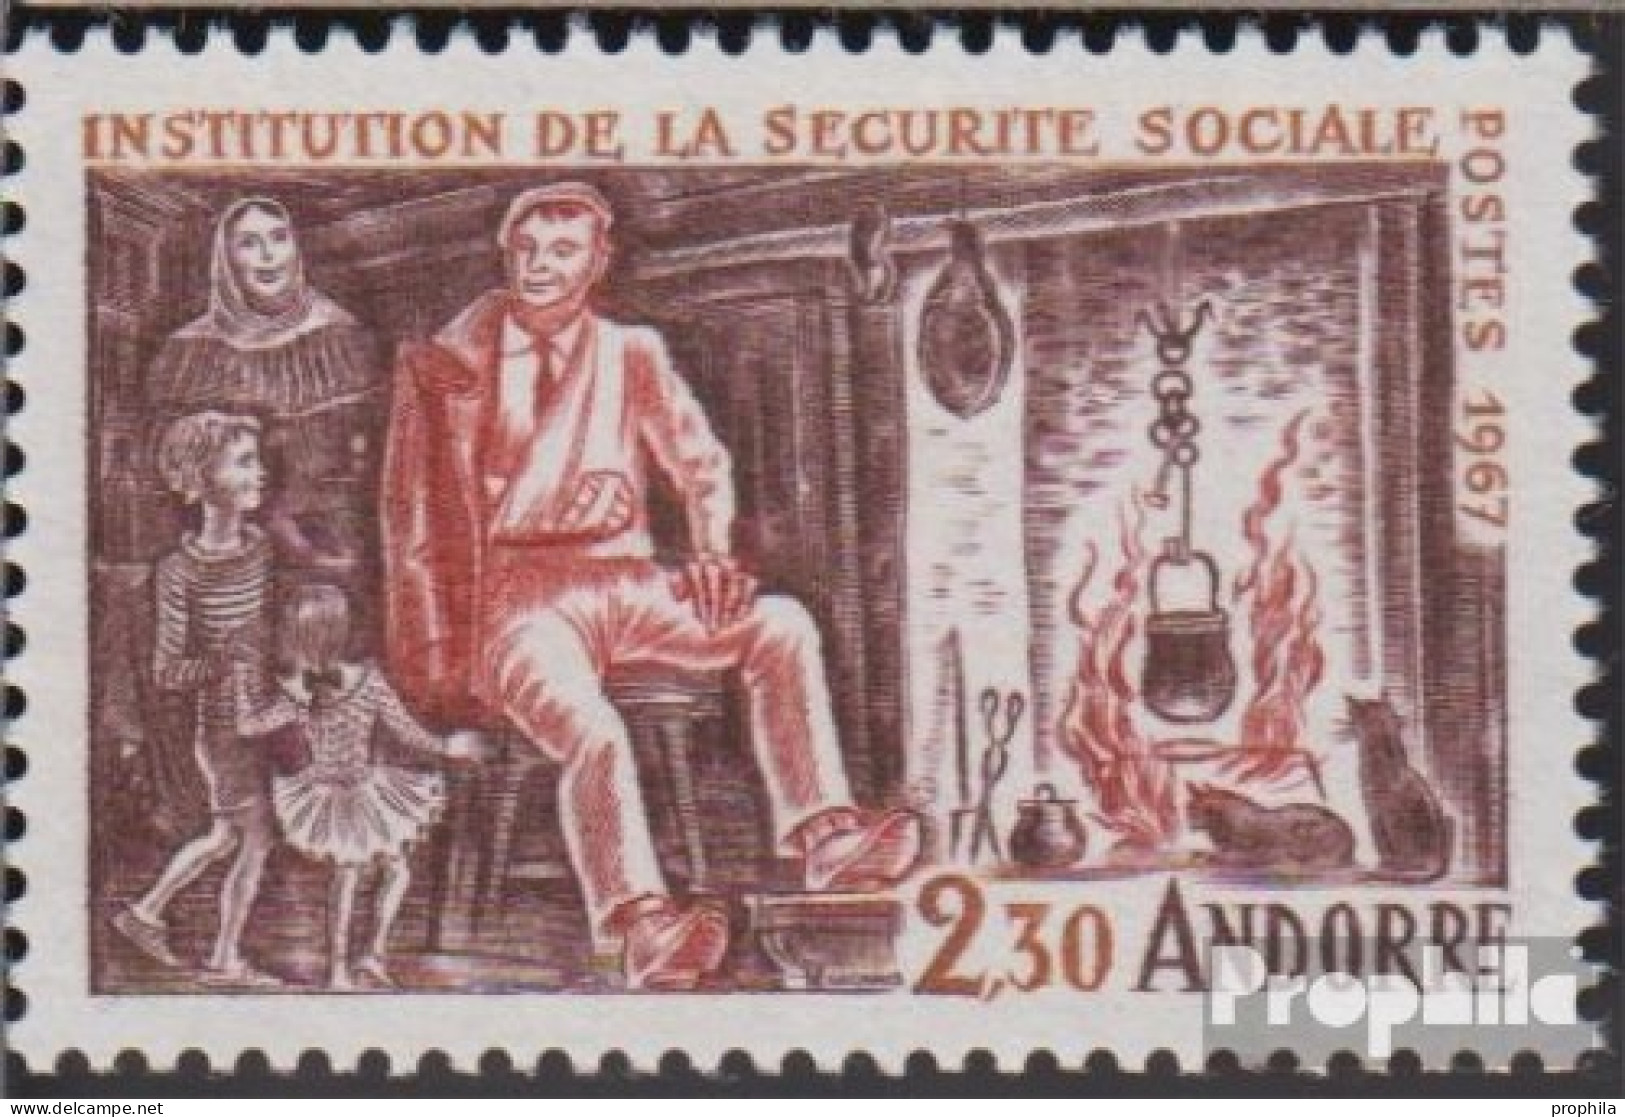 Andorra - Französische Post 203 (kompl.Ausg.) Postfrisch 1967 Sozialversicherung - Markenheftchen